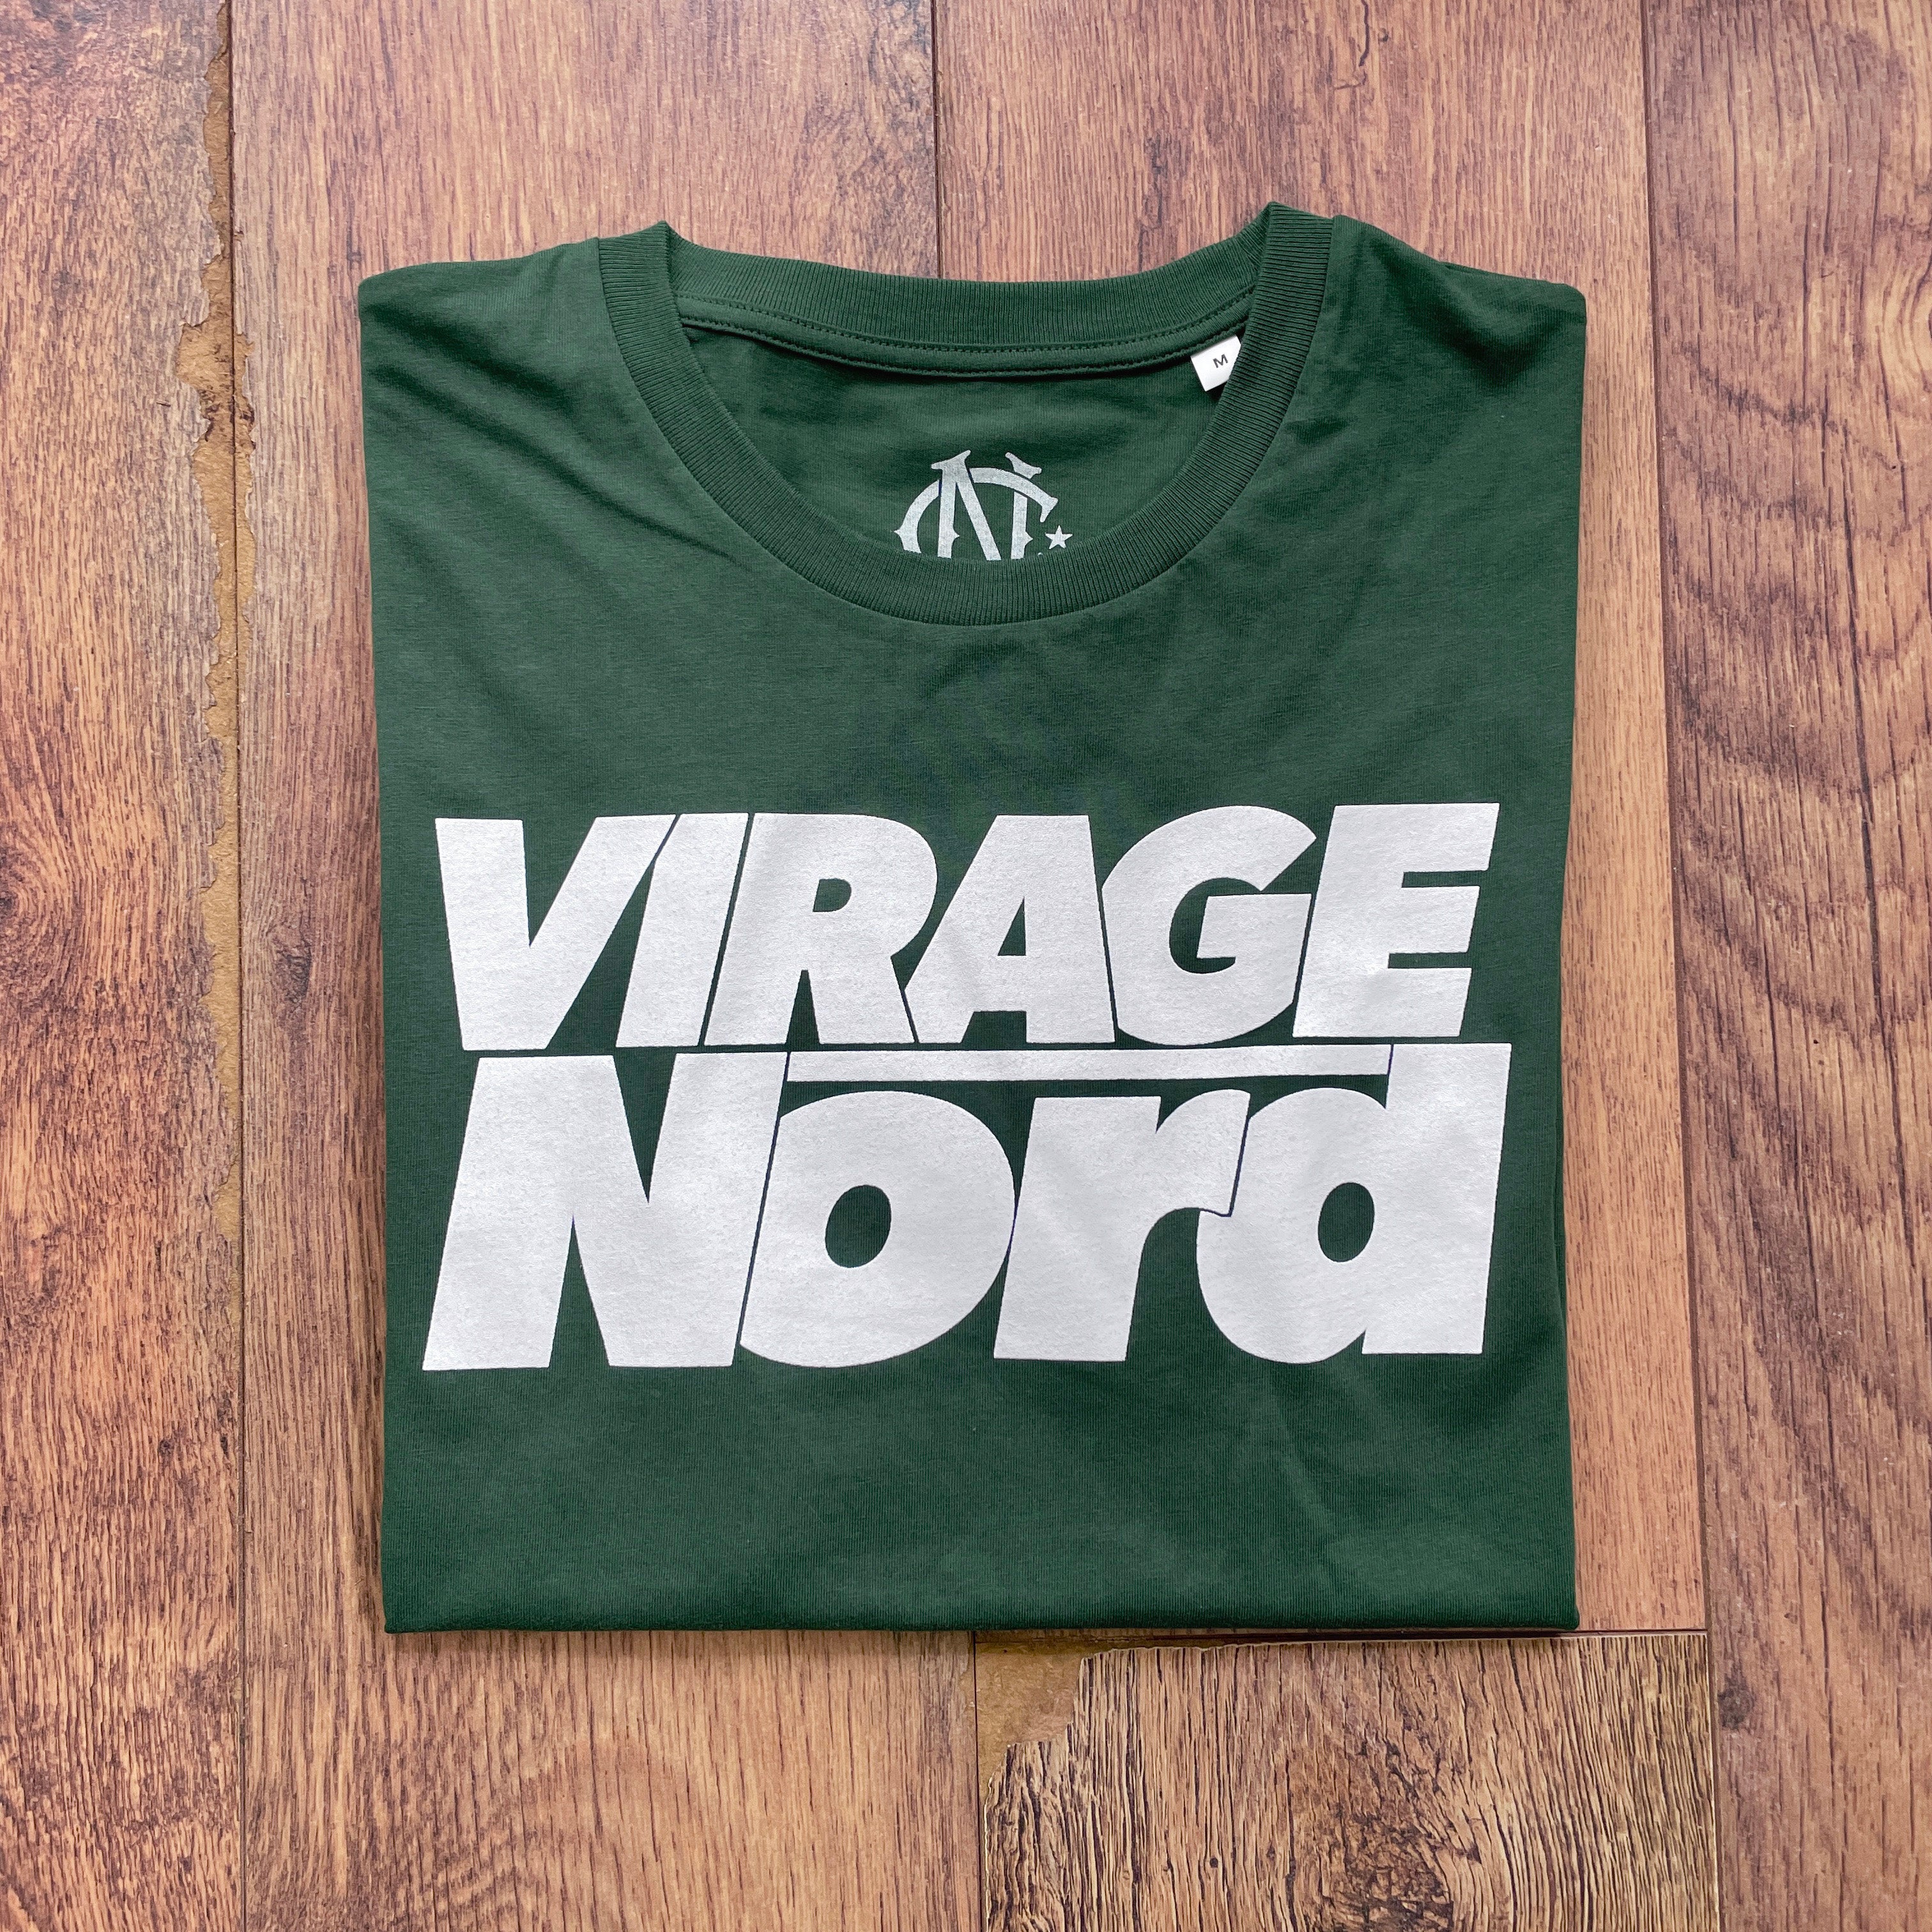 Virage Nord 1980 T-shirt